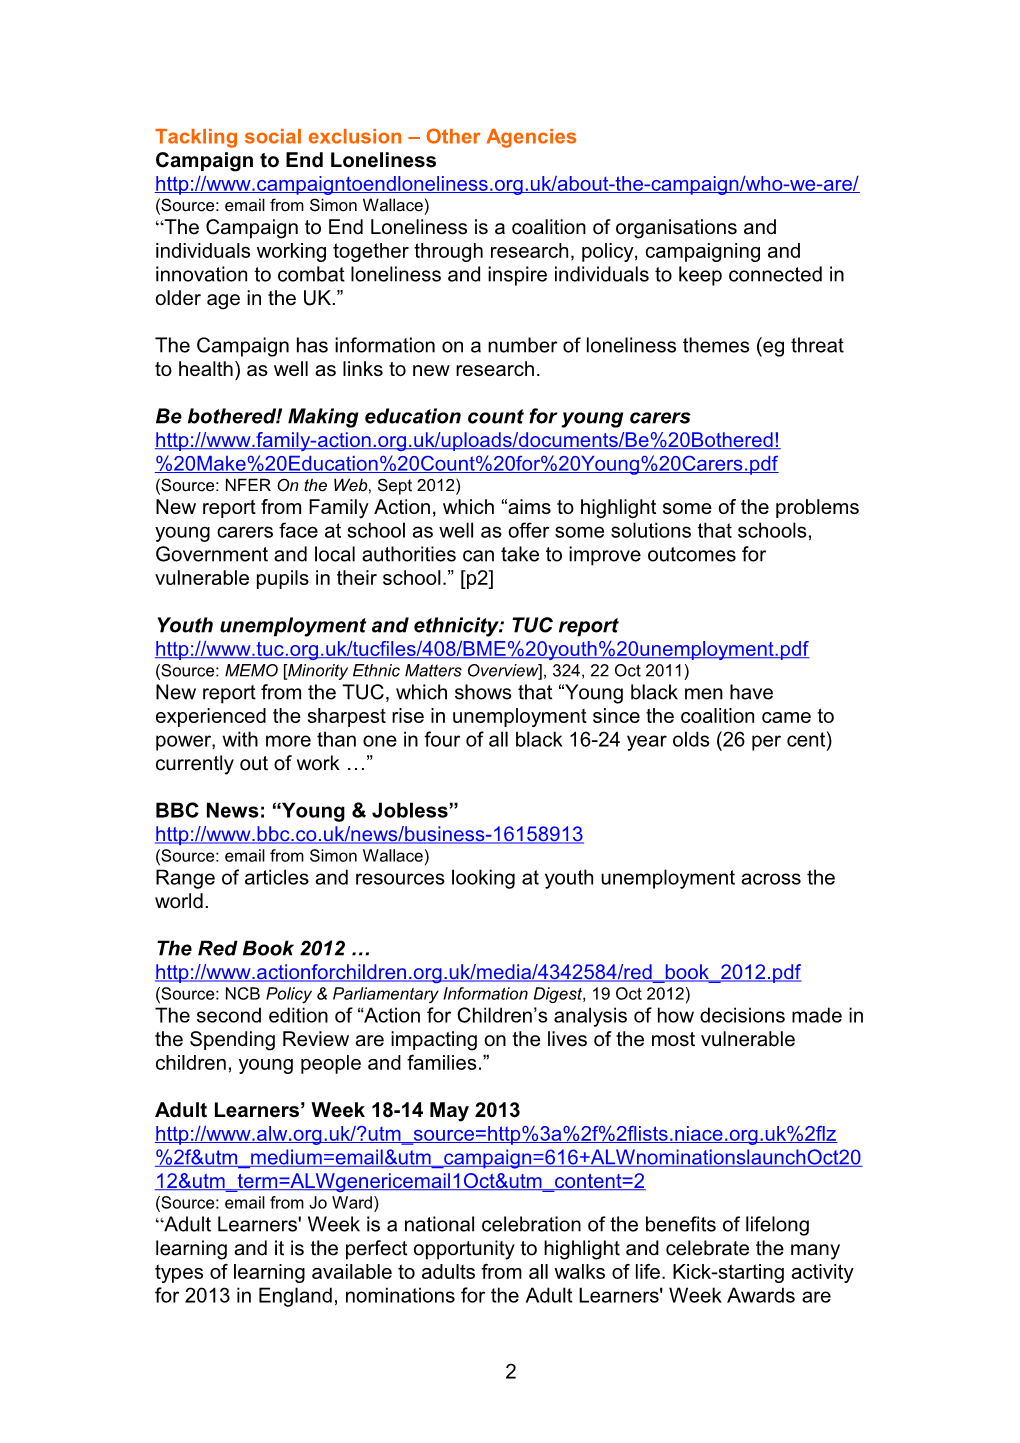 The Network Newsletter Ebulletin 1, 14 April 2008 s6